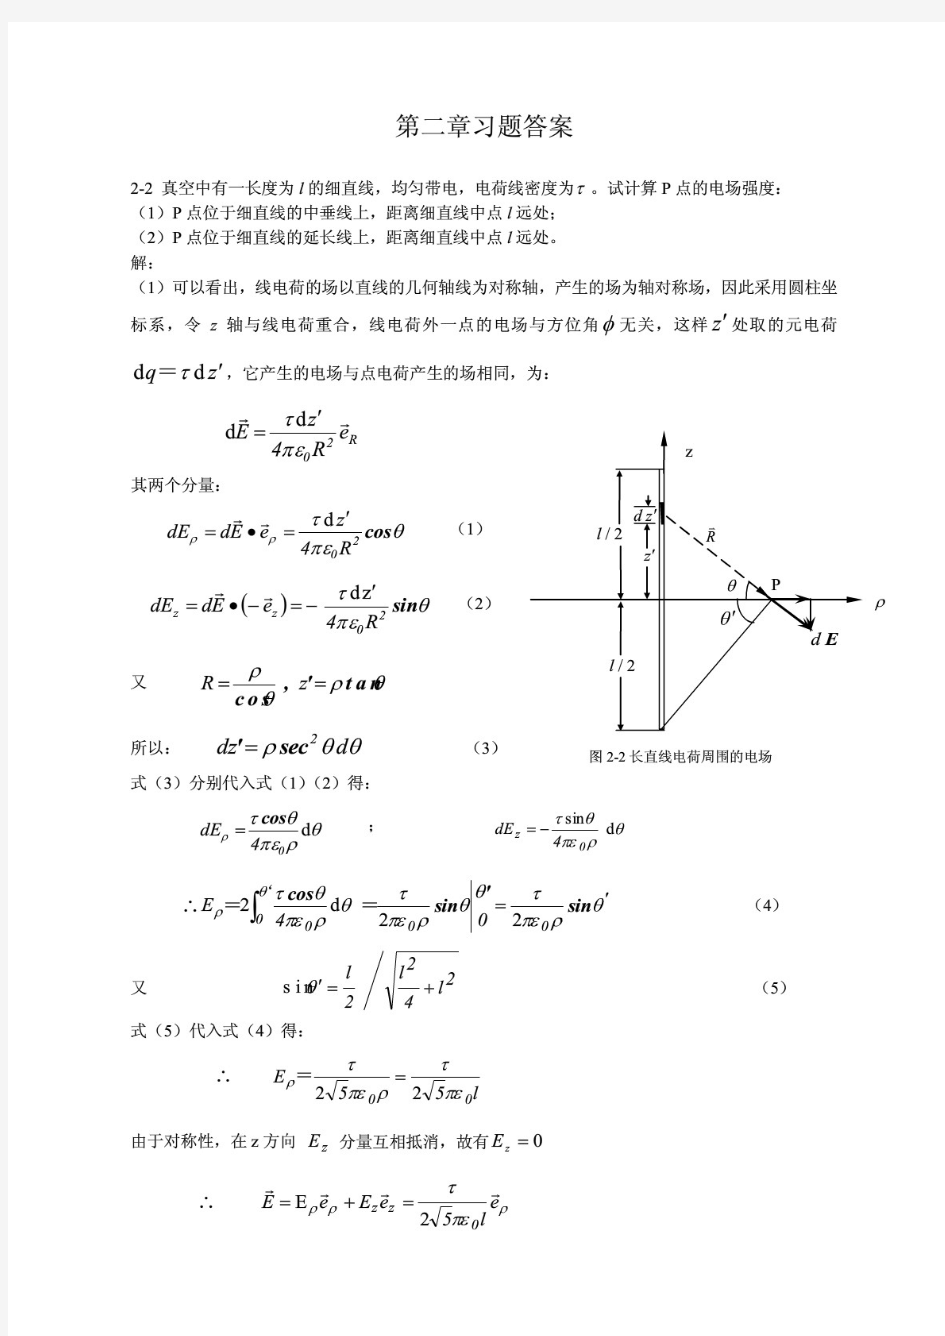 重庆大学电磁场教材习题答案